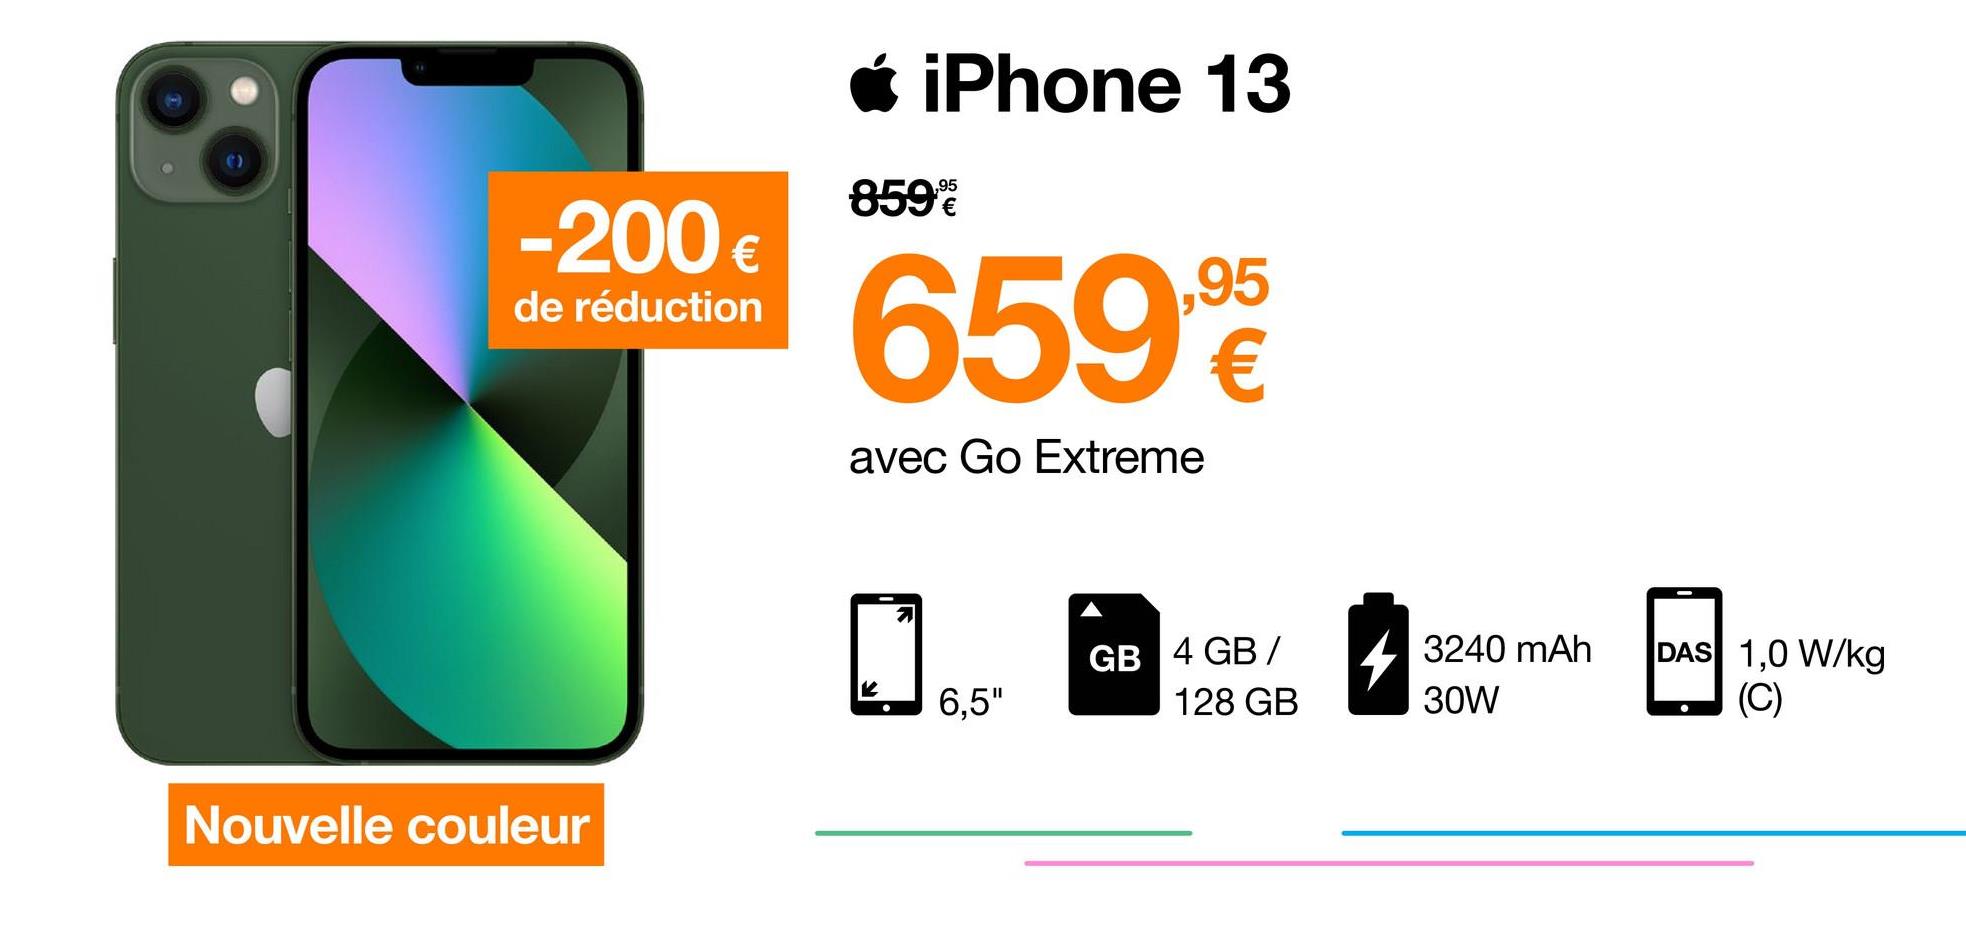 iPhone 13
,95
859
-200 €
€
de réduction
6592
avec Go Extreme
GB 4 GB /
4 3240 mAh
DAS 1,0 W/kg
(C)
6,5"
128 GB
30W
Nouvelle couleur
